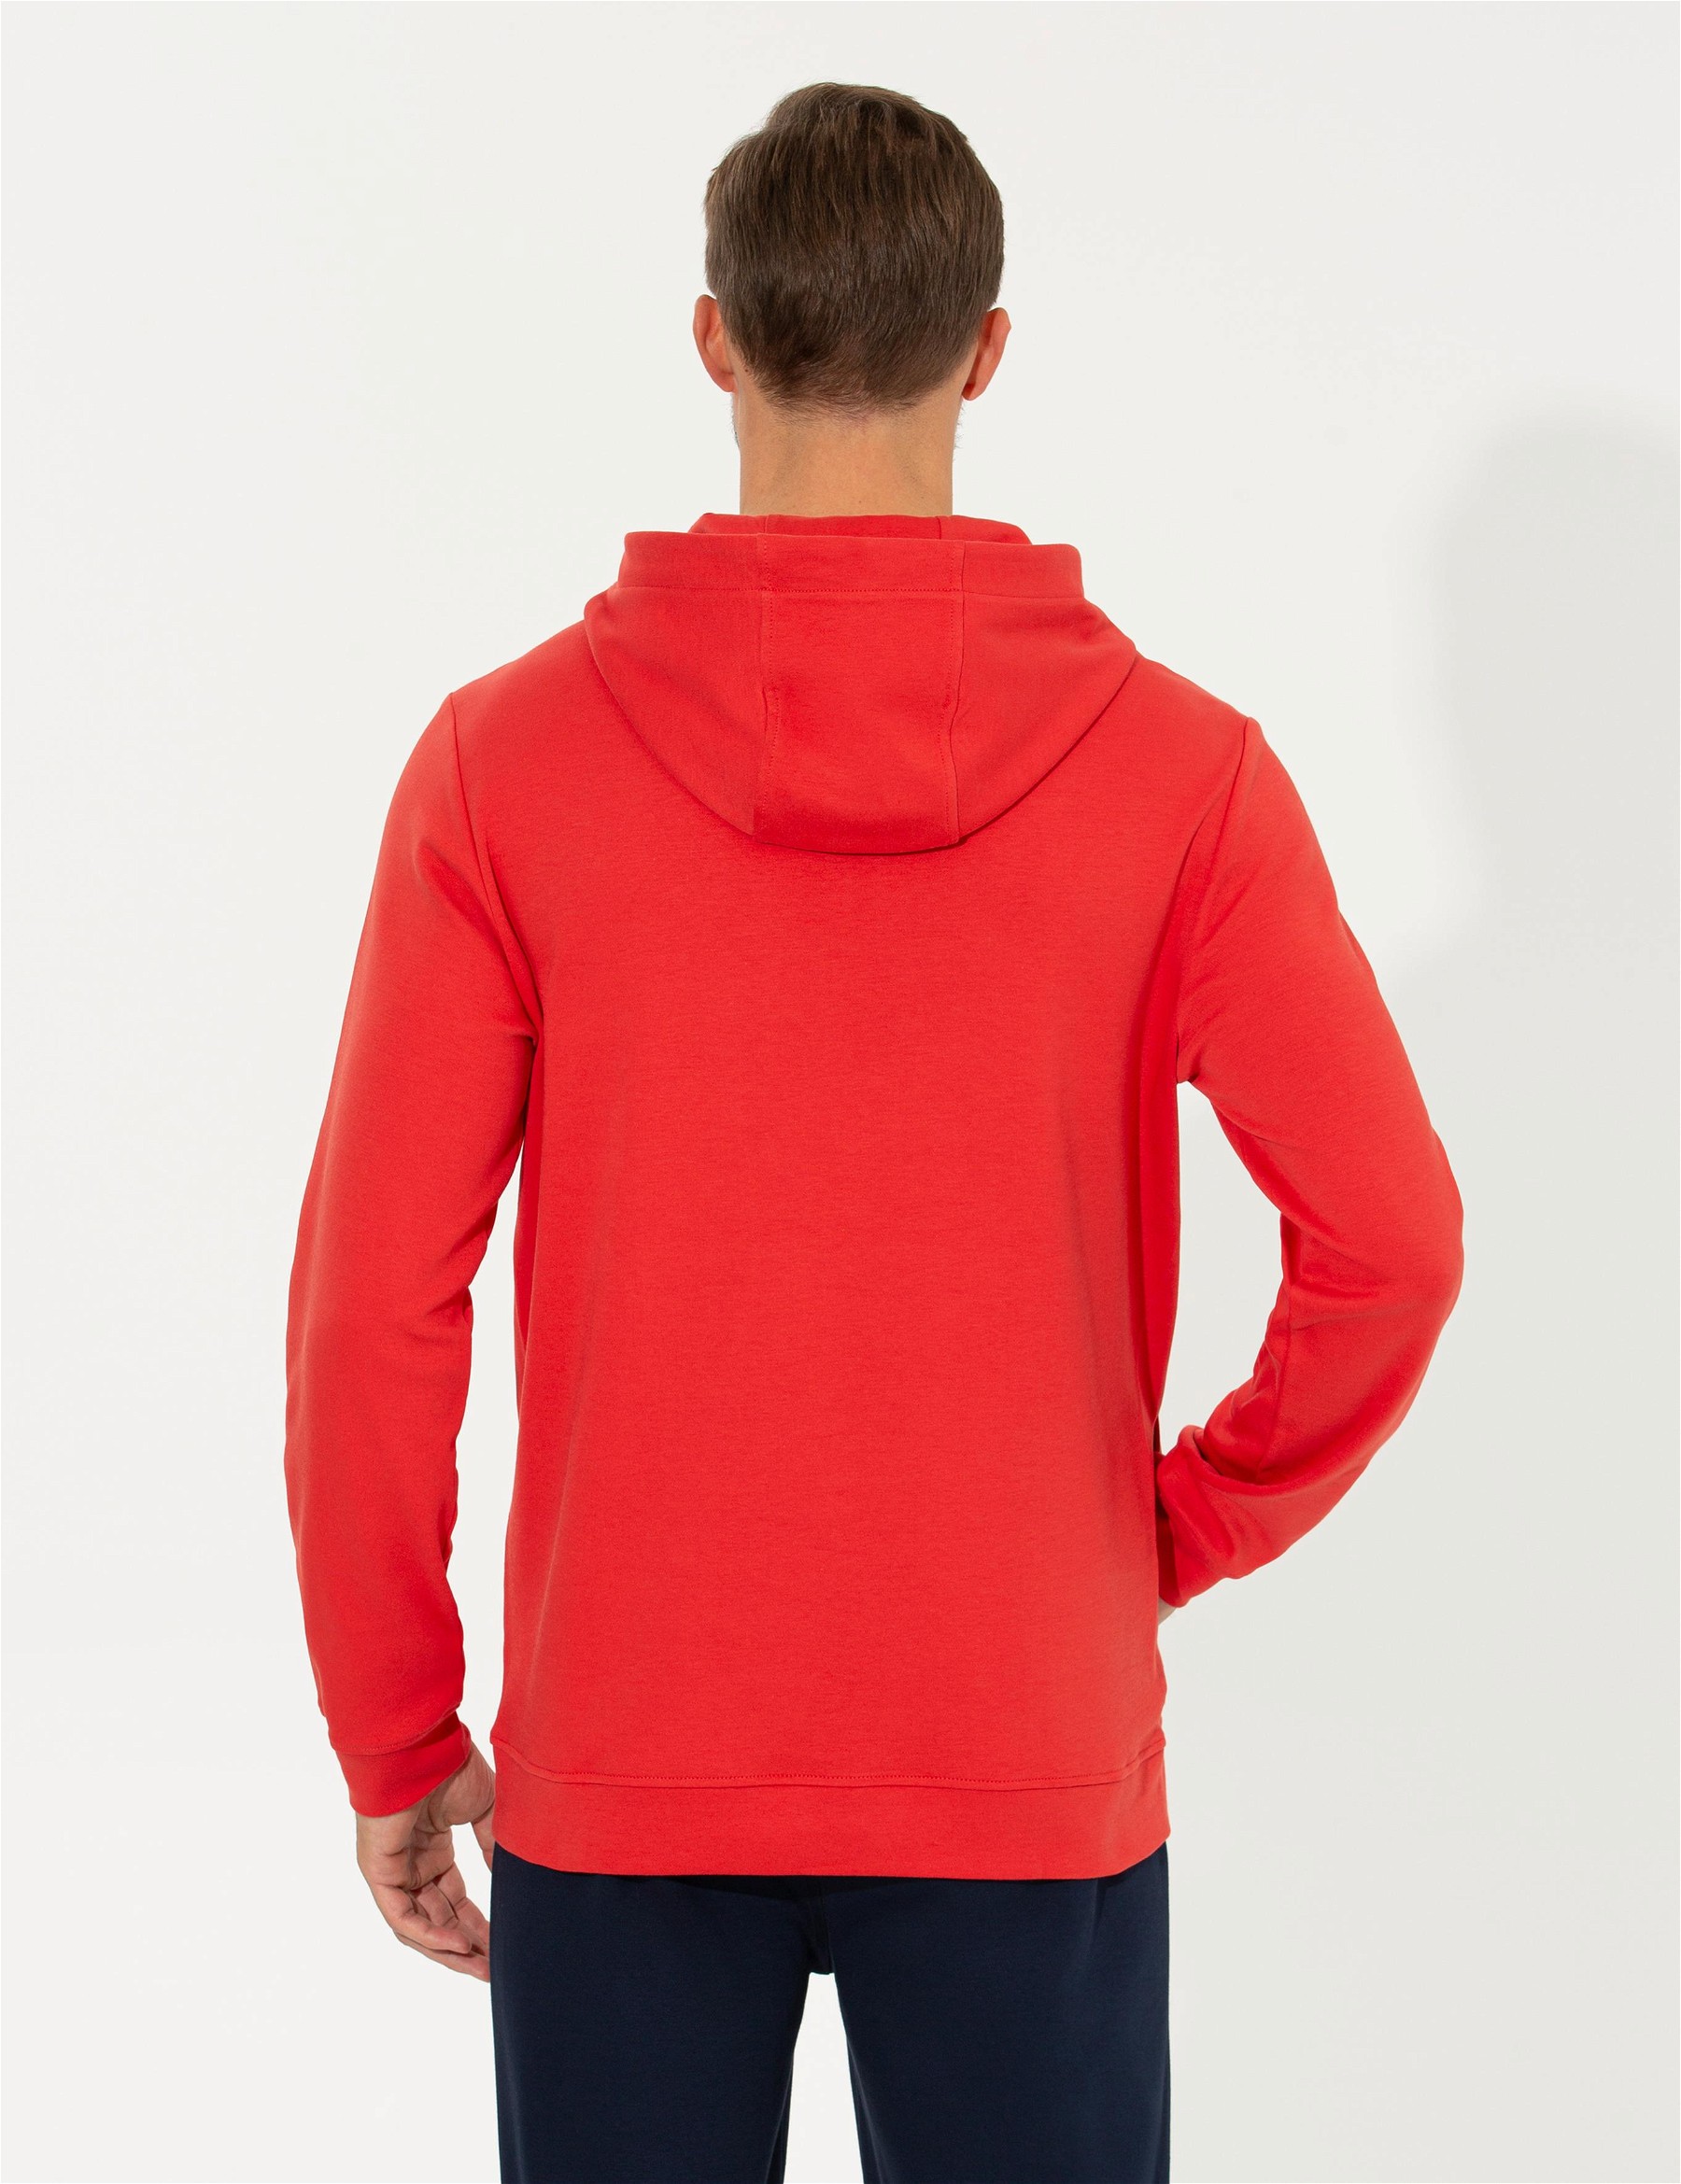 Kırmızı Kapüşonlu Sweatshirt